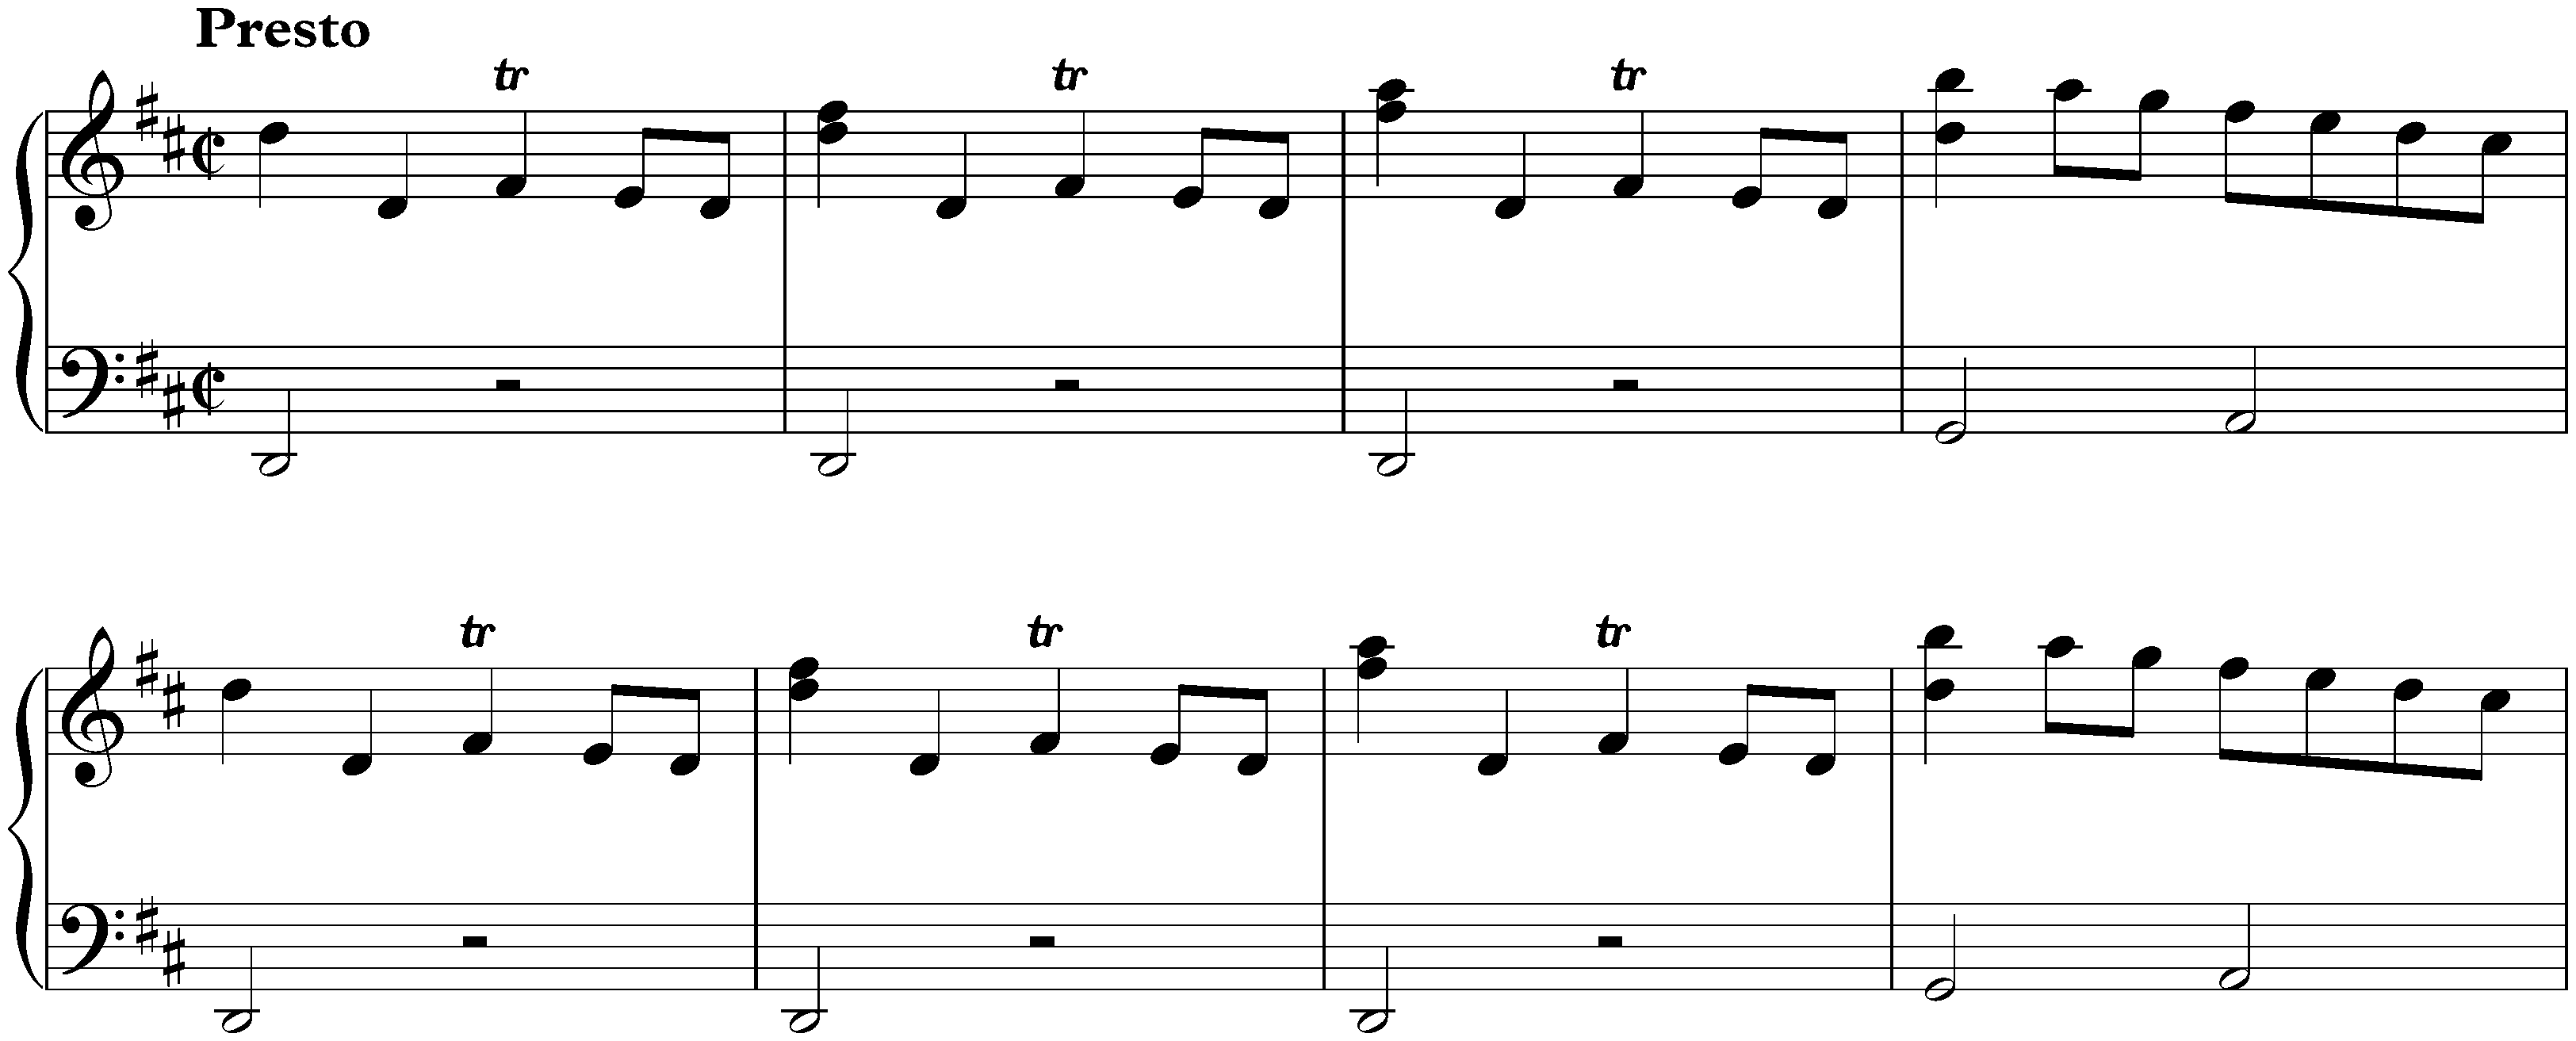 Sonata in D major, K. 53